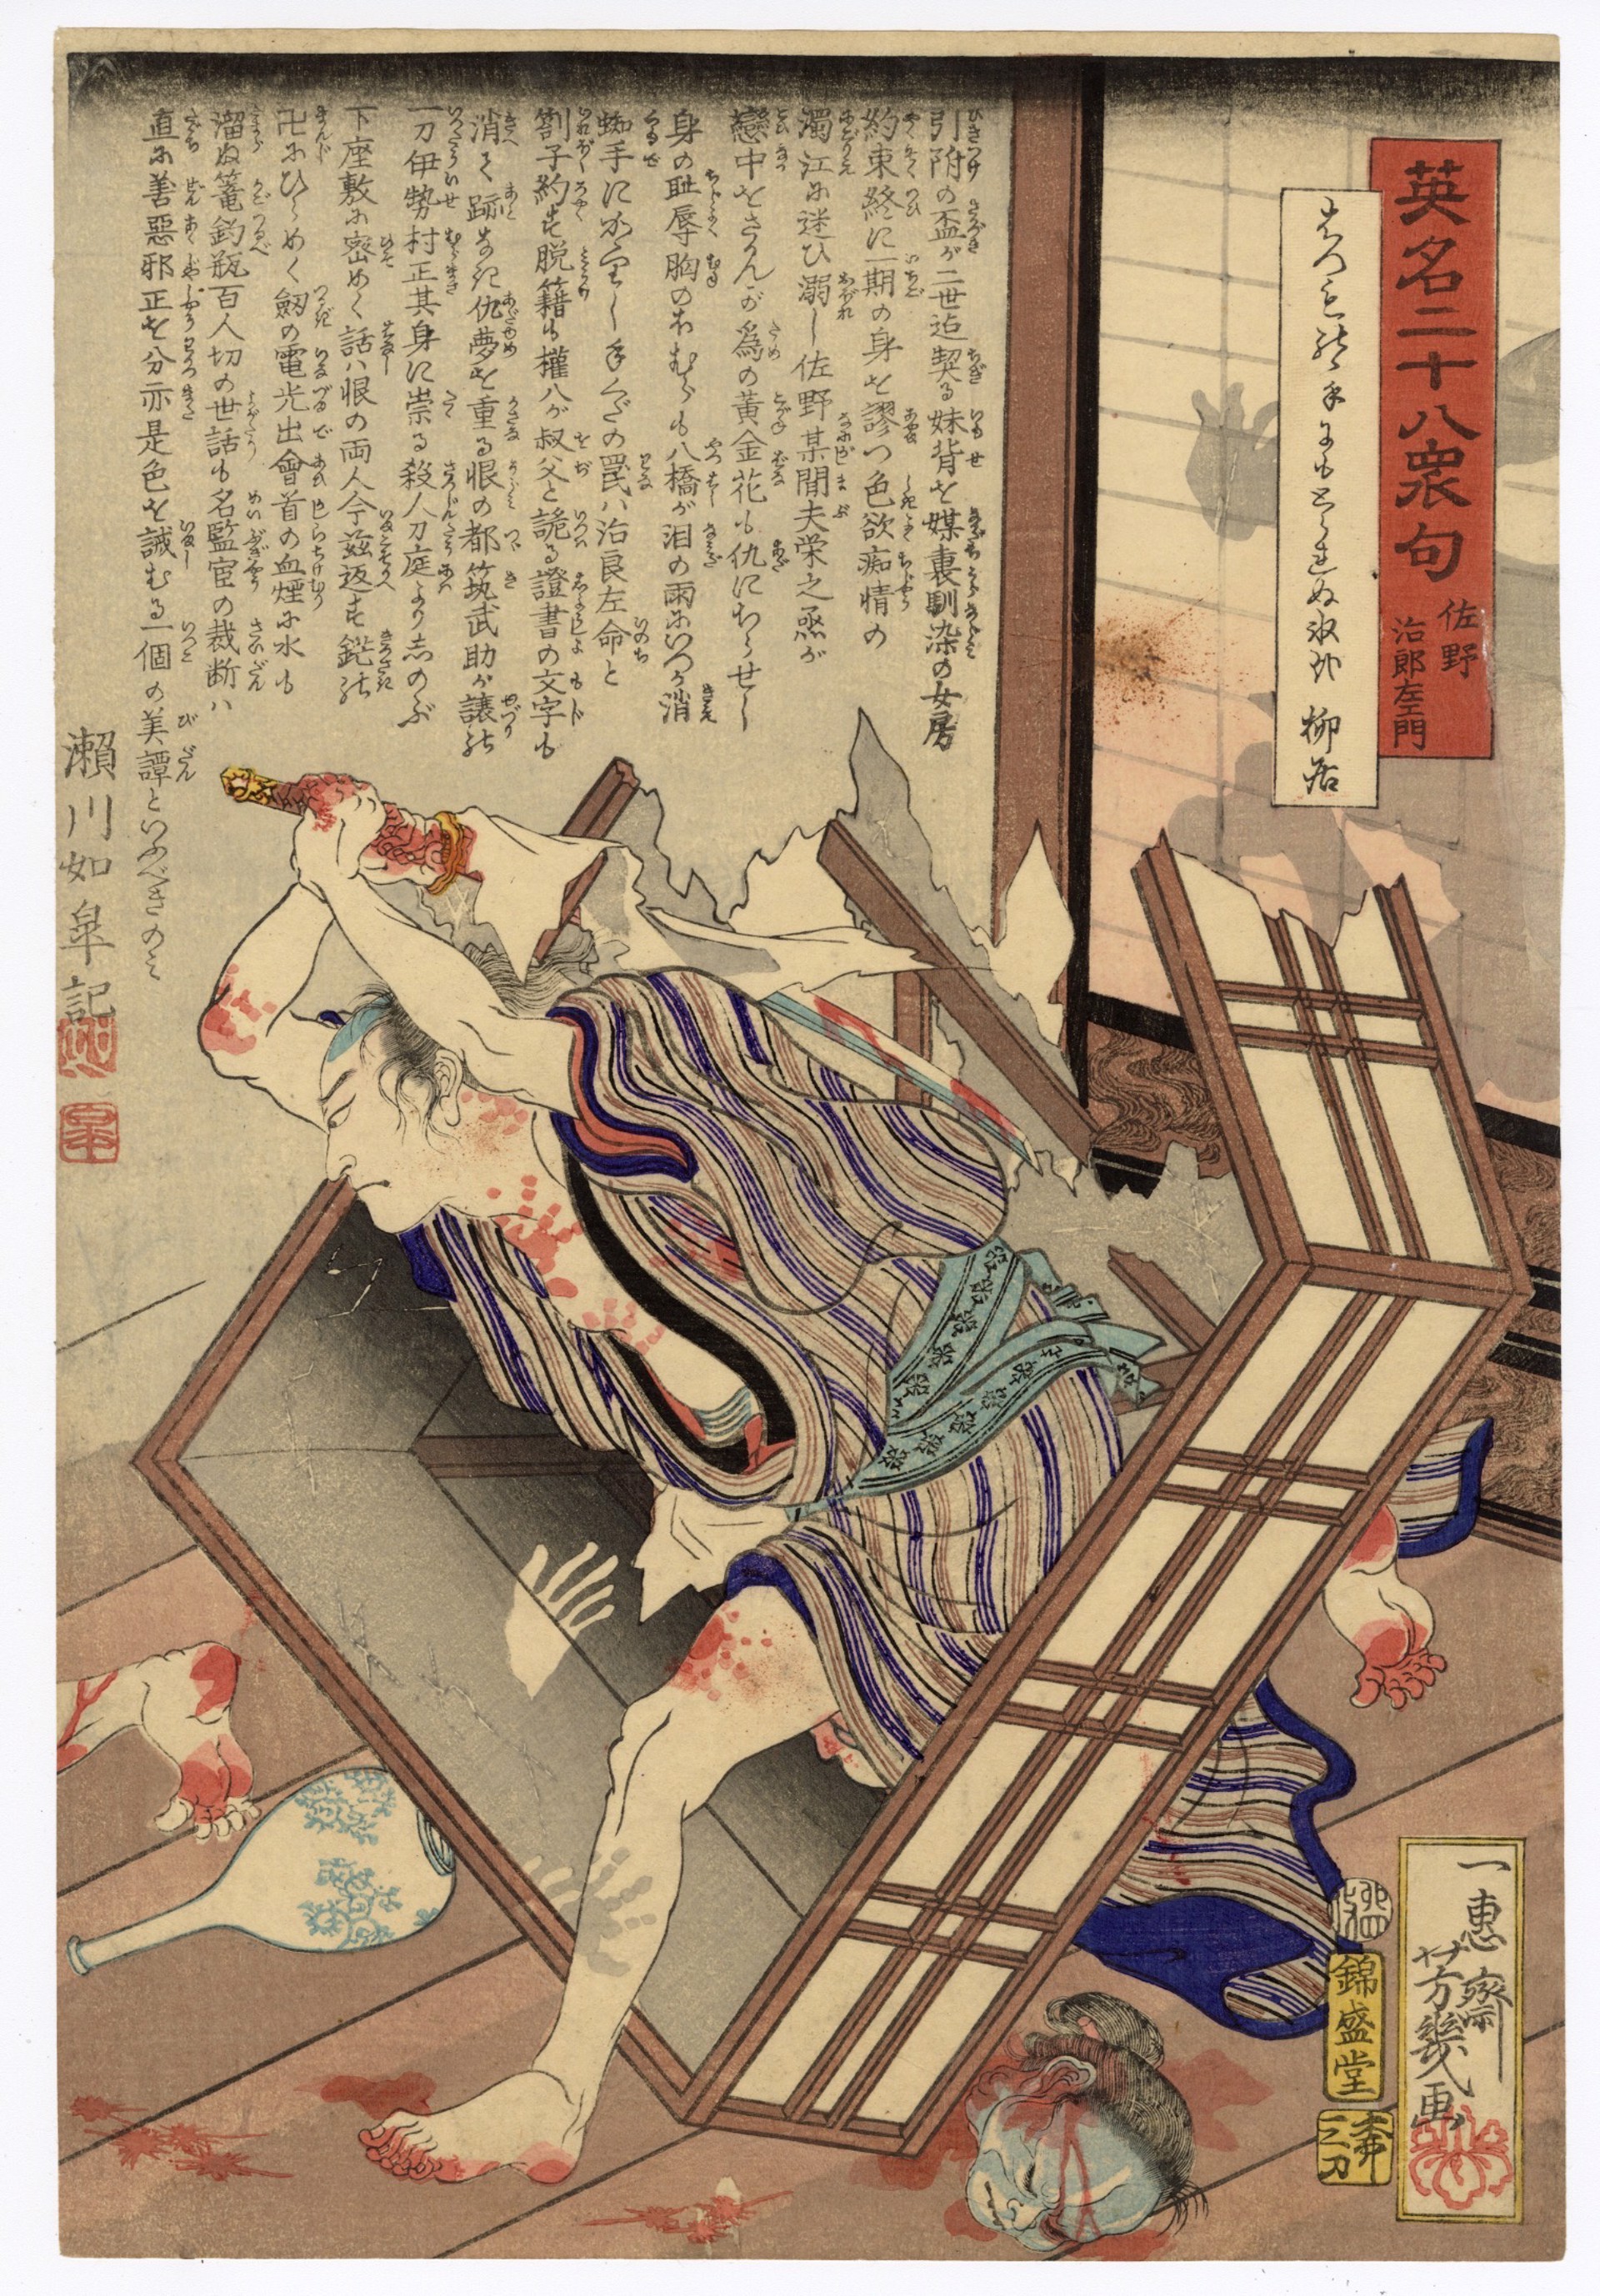 #6 Sano Jirozaemon Massacres 100 People in the Yoshiwara by Yoshi-iku